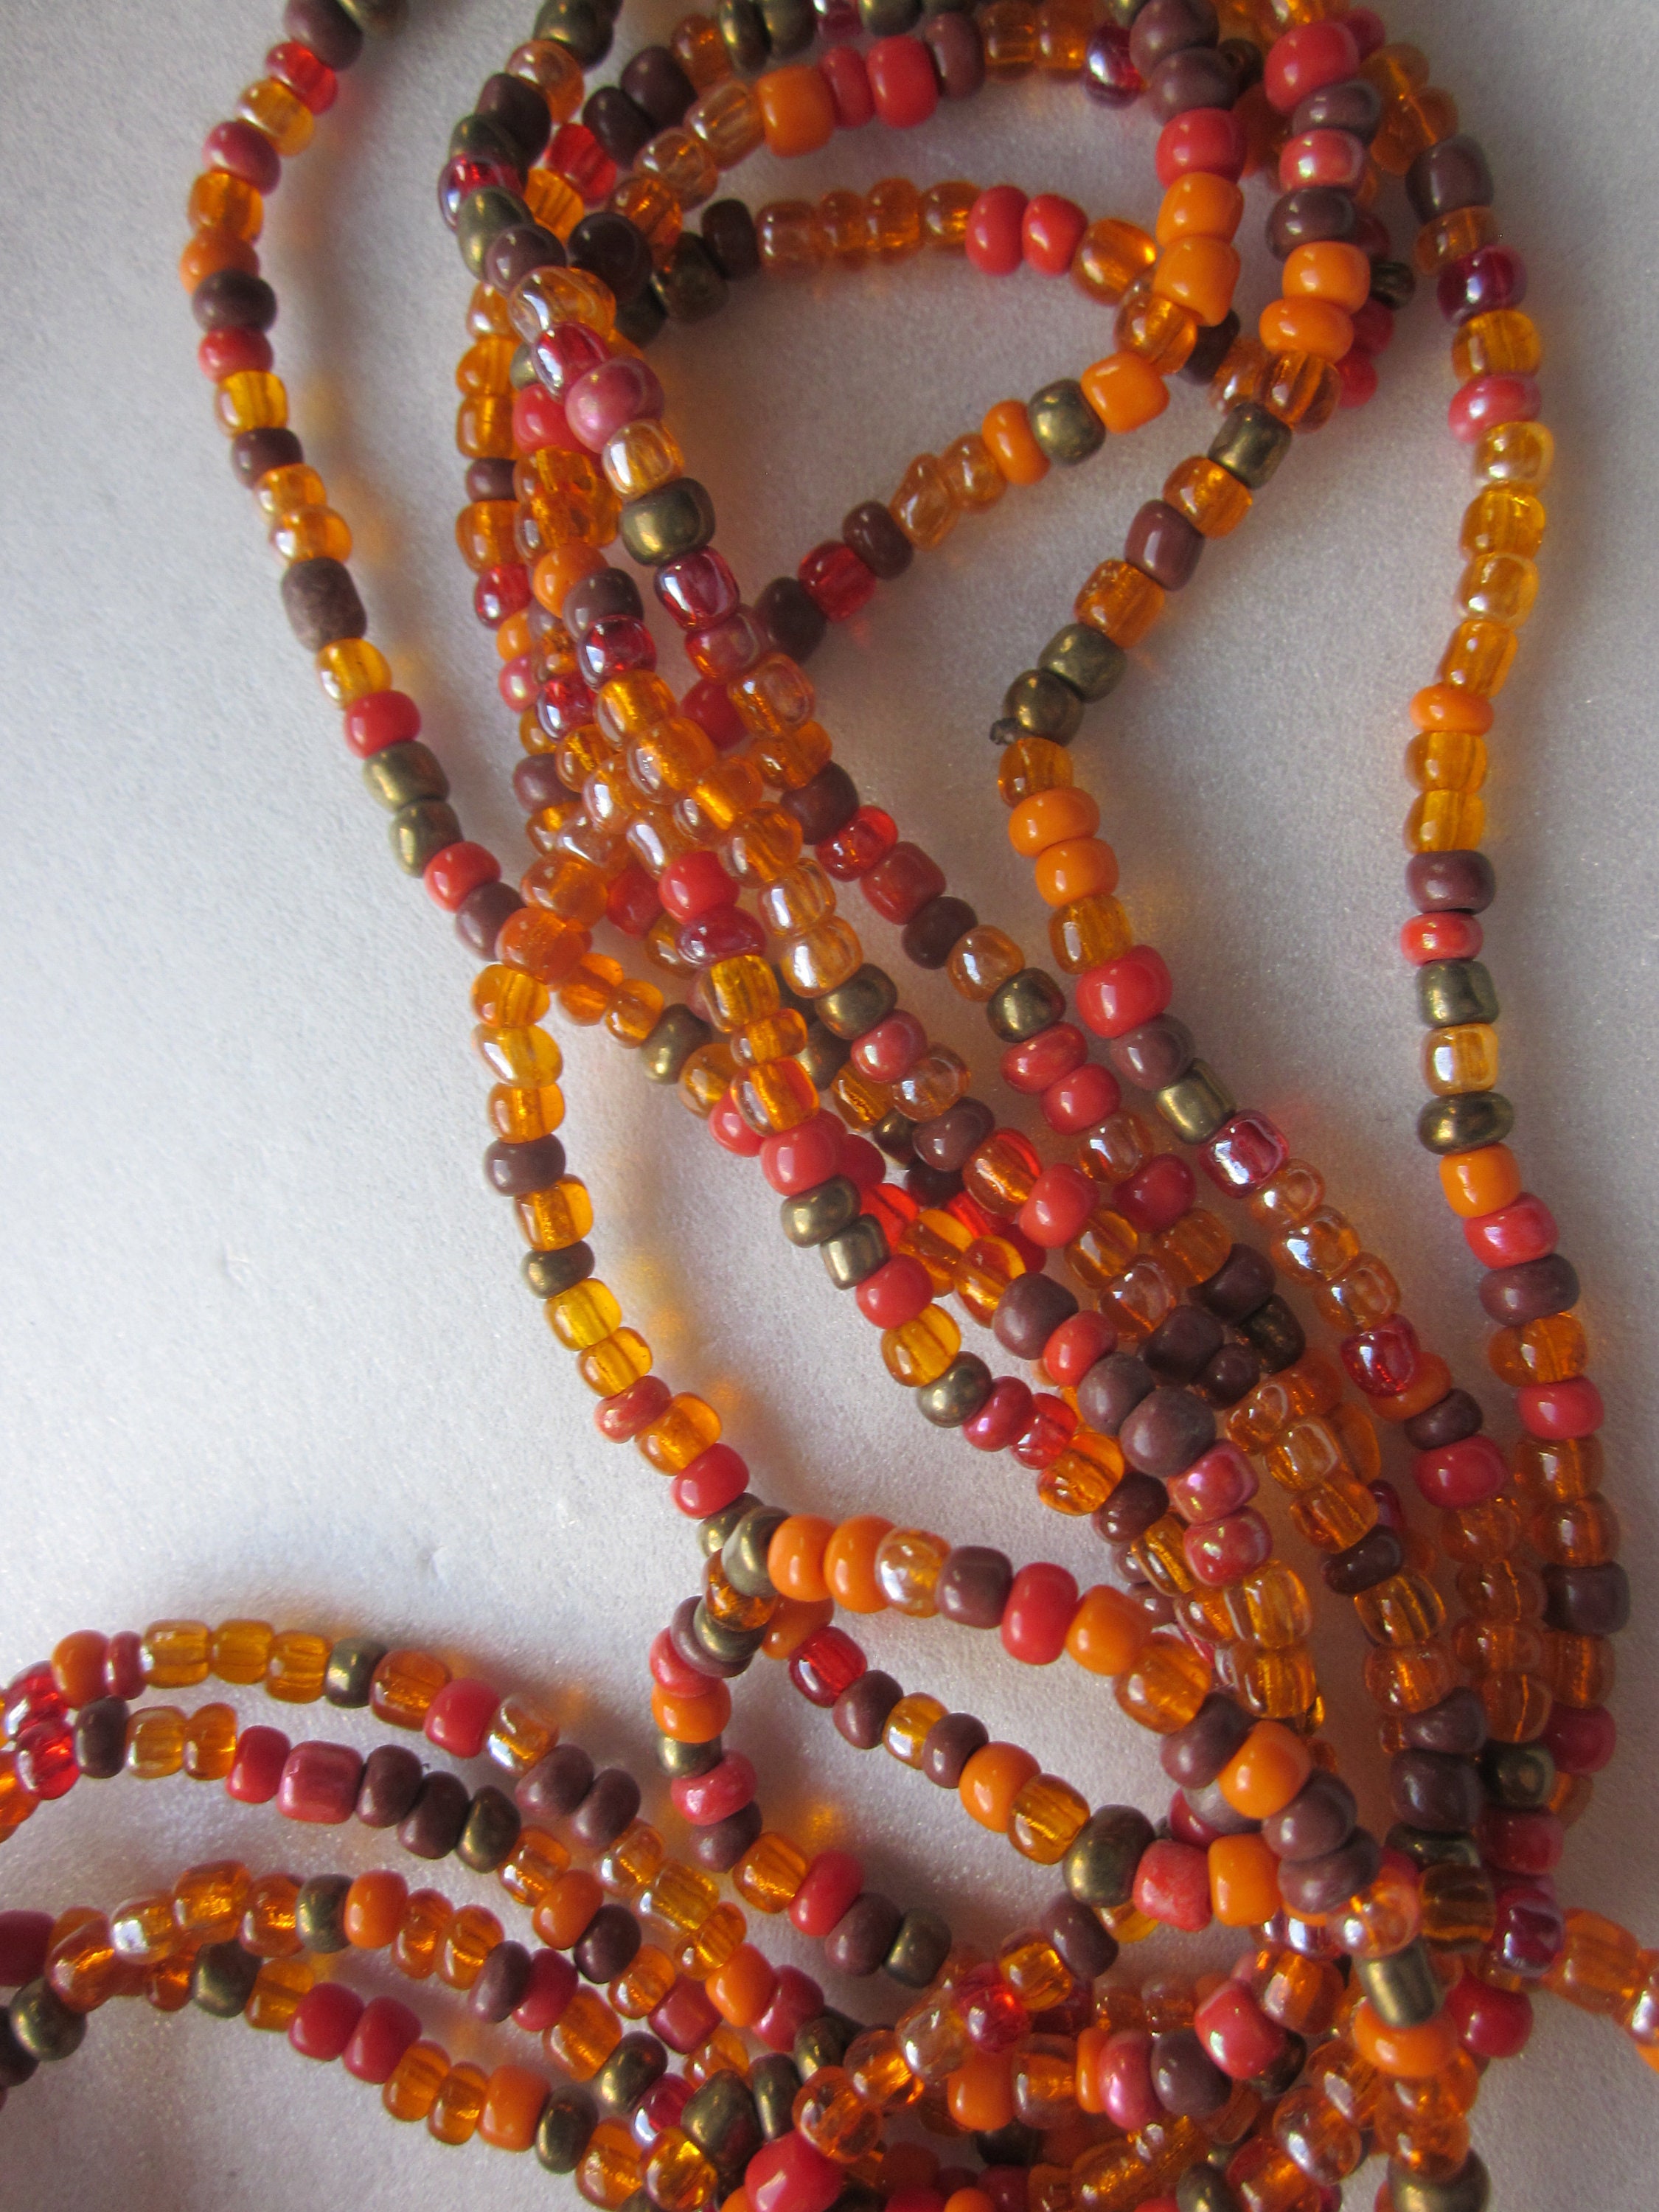 2mm Seed Beads 40g , Orange Opaque Seed Beads, Glass Seed Beads Orange 